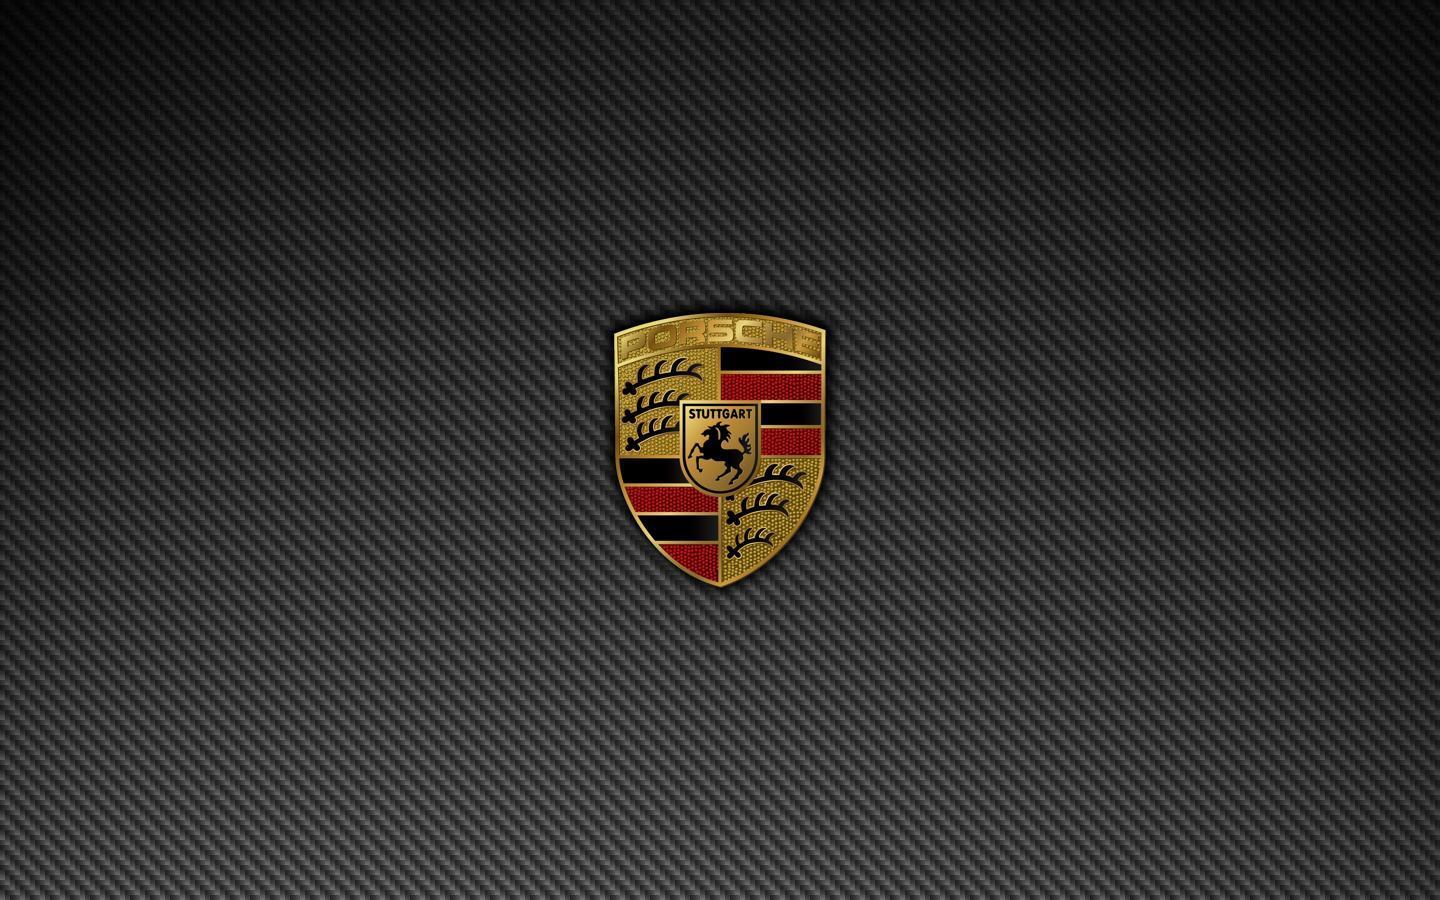 PORSCHE LOGO - Porsche Wallpaper 14335379 - Fanpop